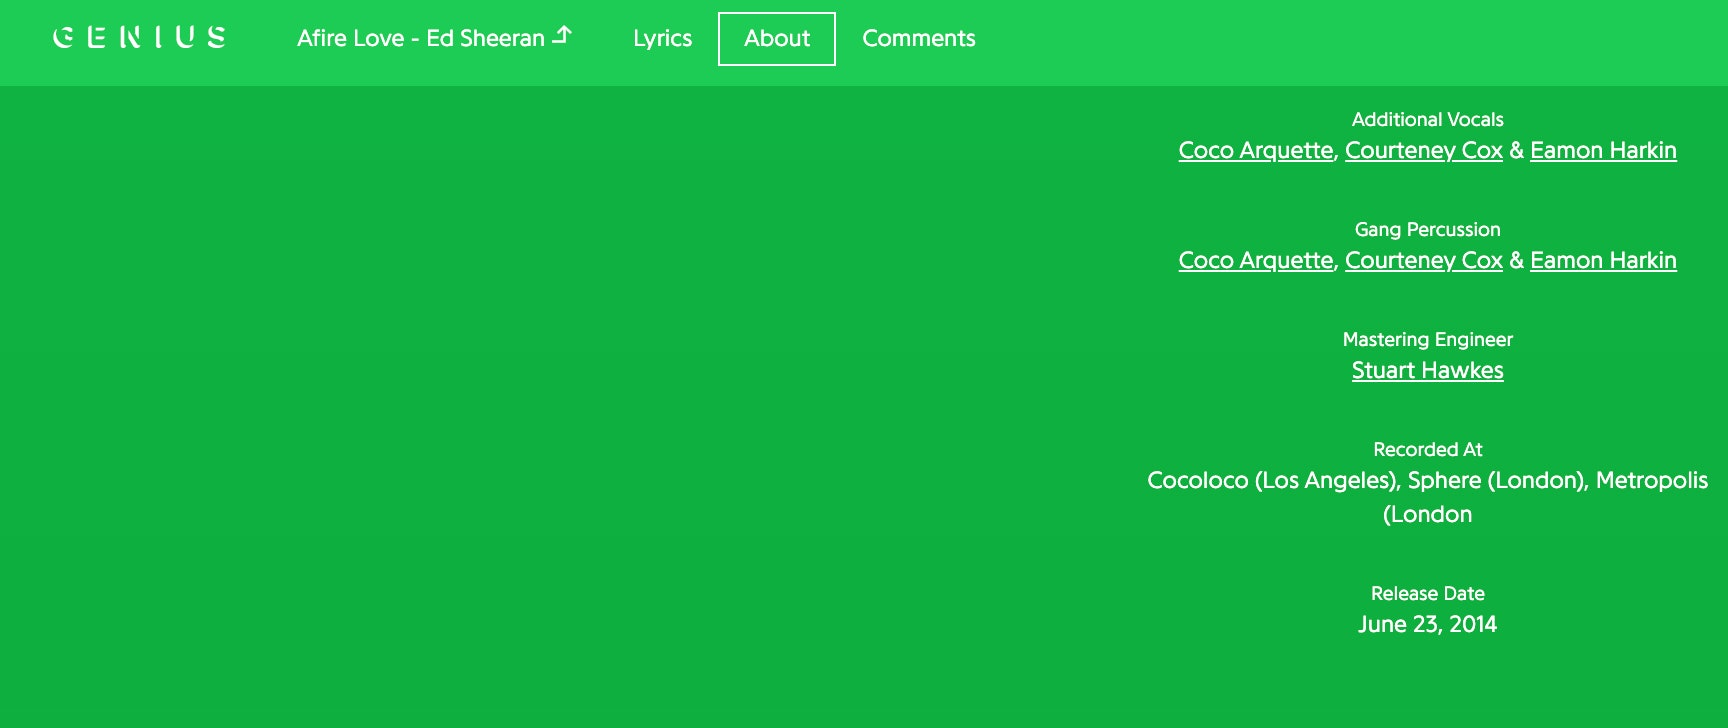 Кортни Кокс е повече от просто приятелка с Ед Шийрън - тя пее в неговите албуми